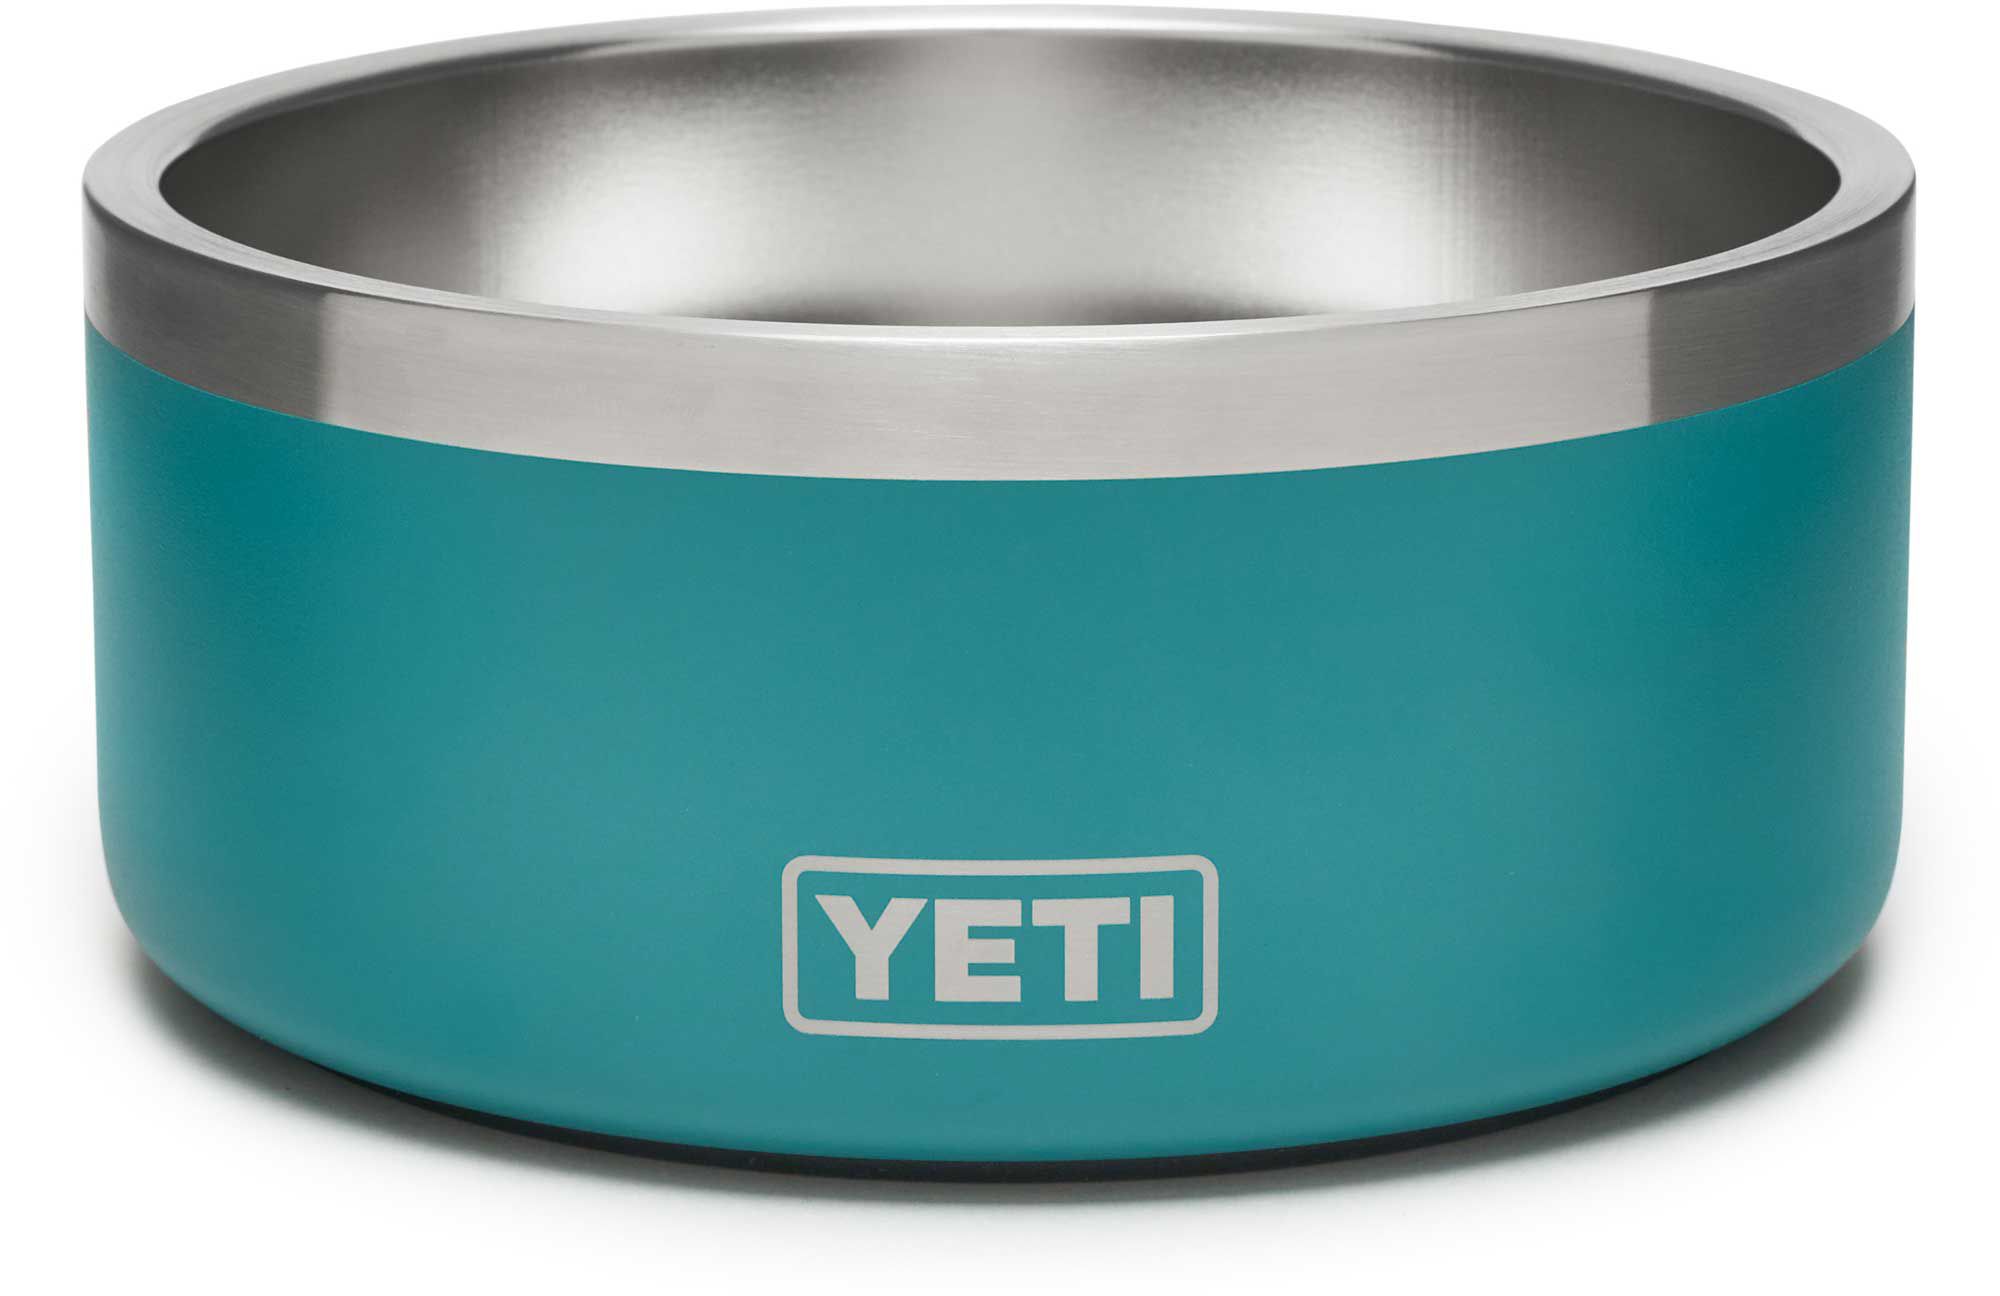 yeti pet water bowl